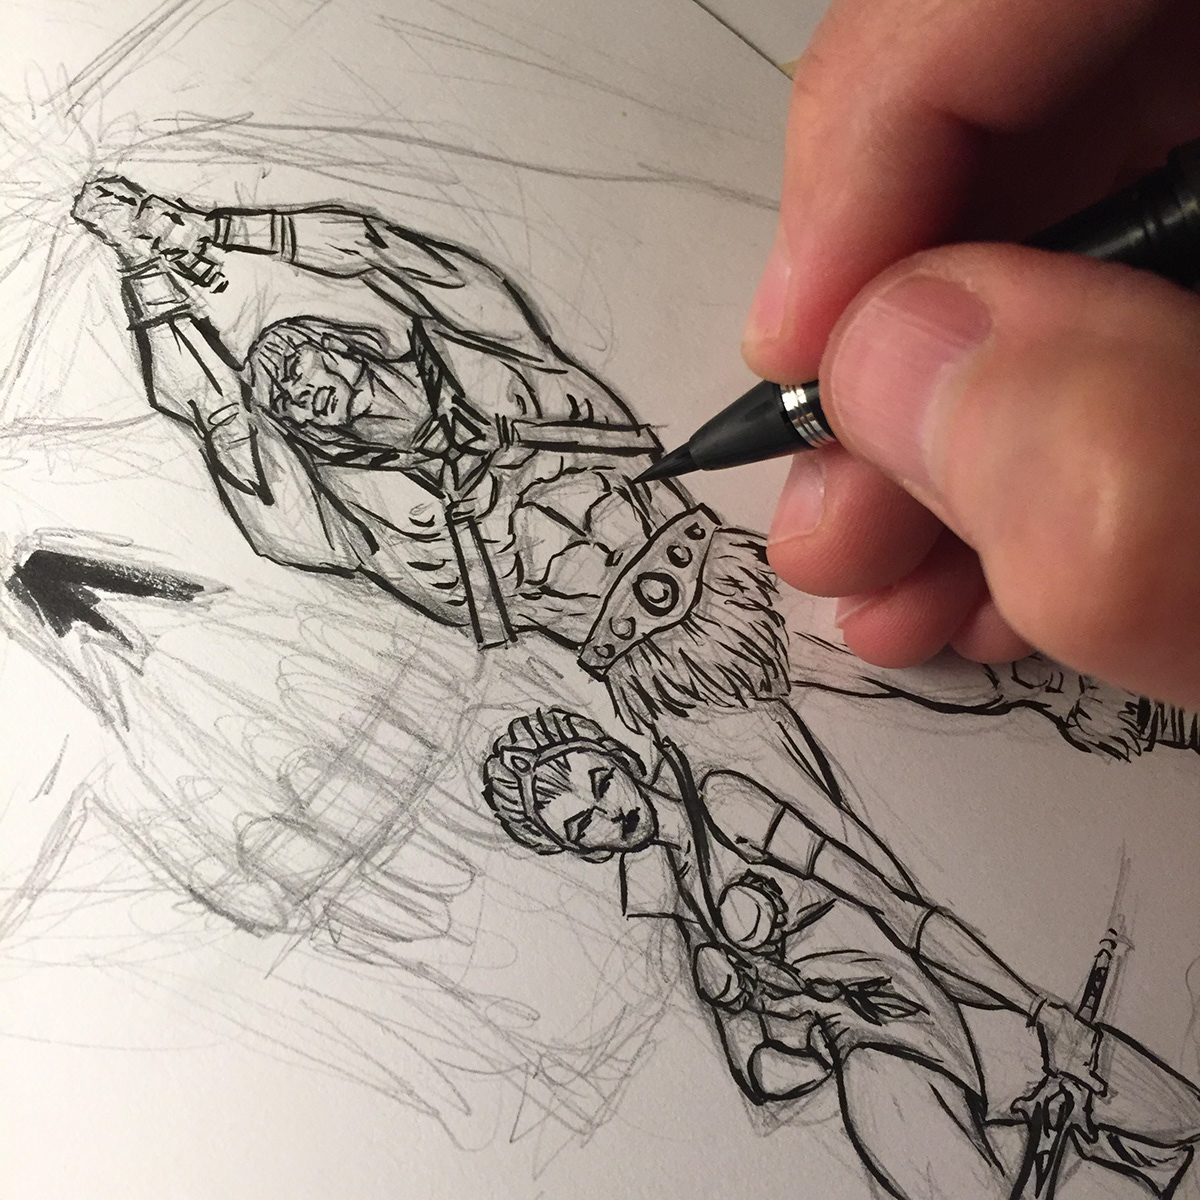 he-man sketch ink